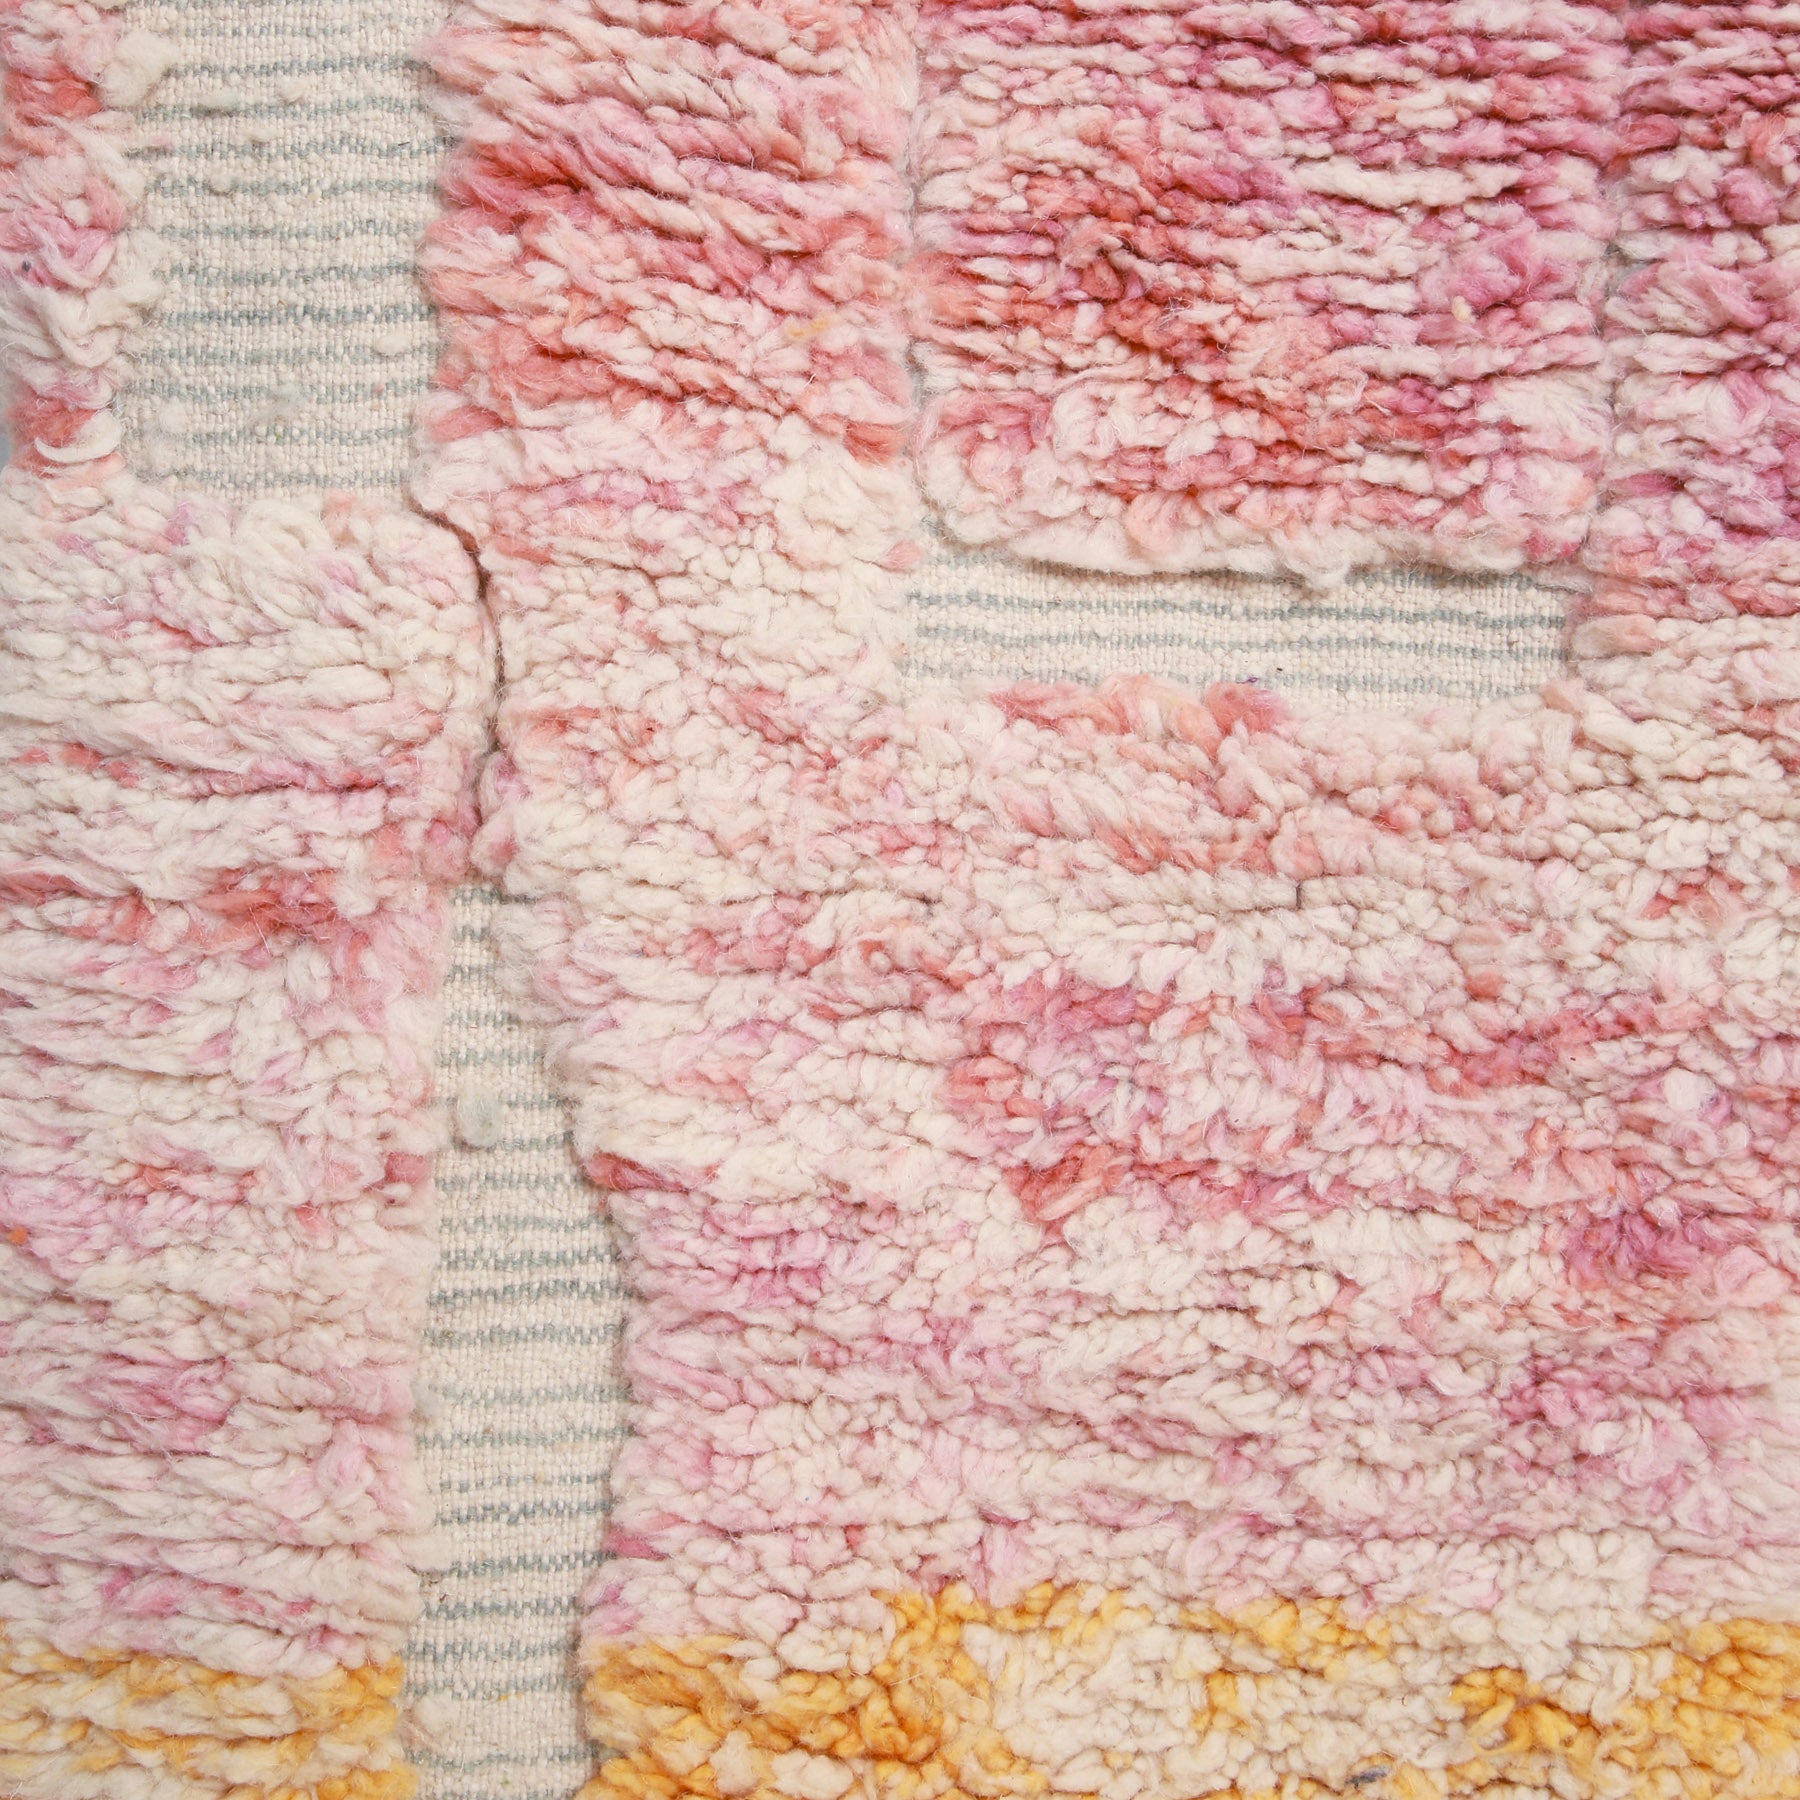 dettaglio della lana annodata color rosa sfumato e degli intrecci chiari di una passatoia beni ourain